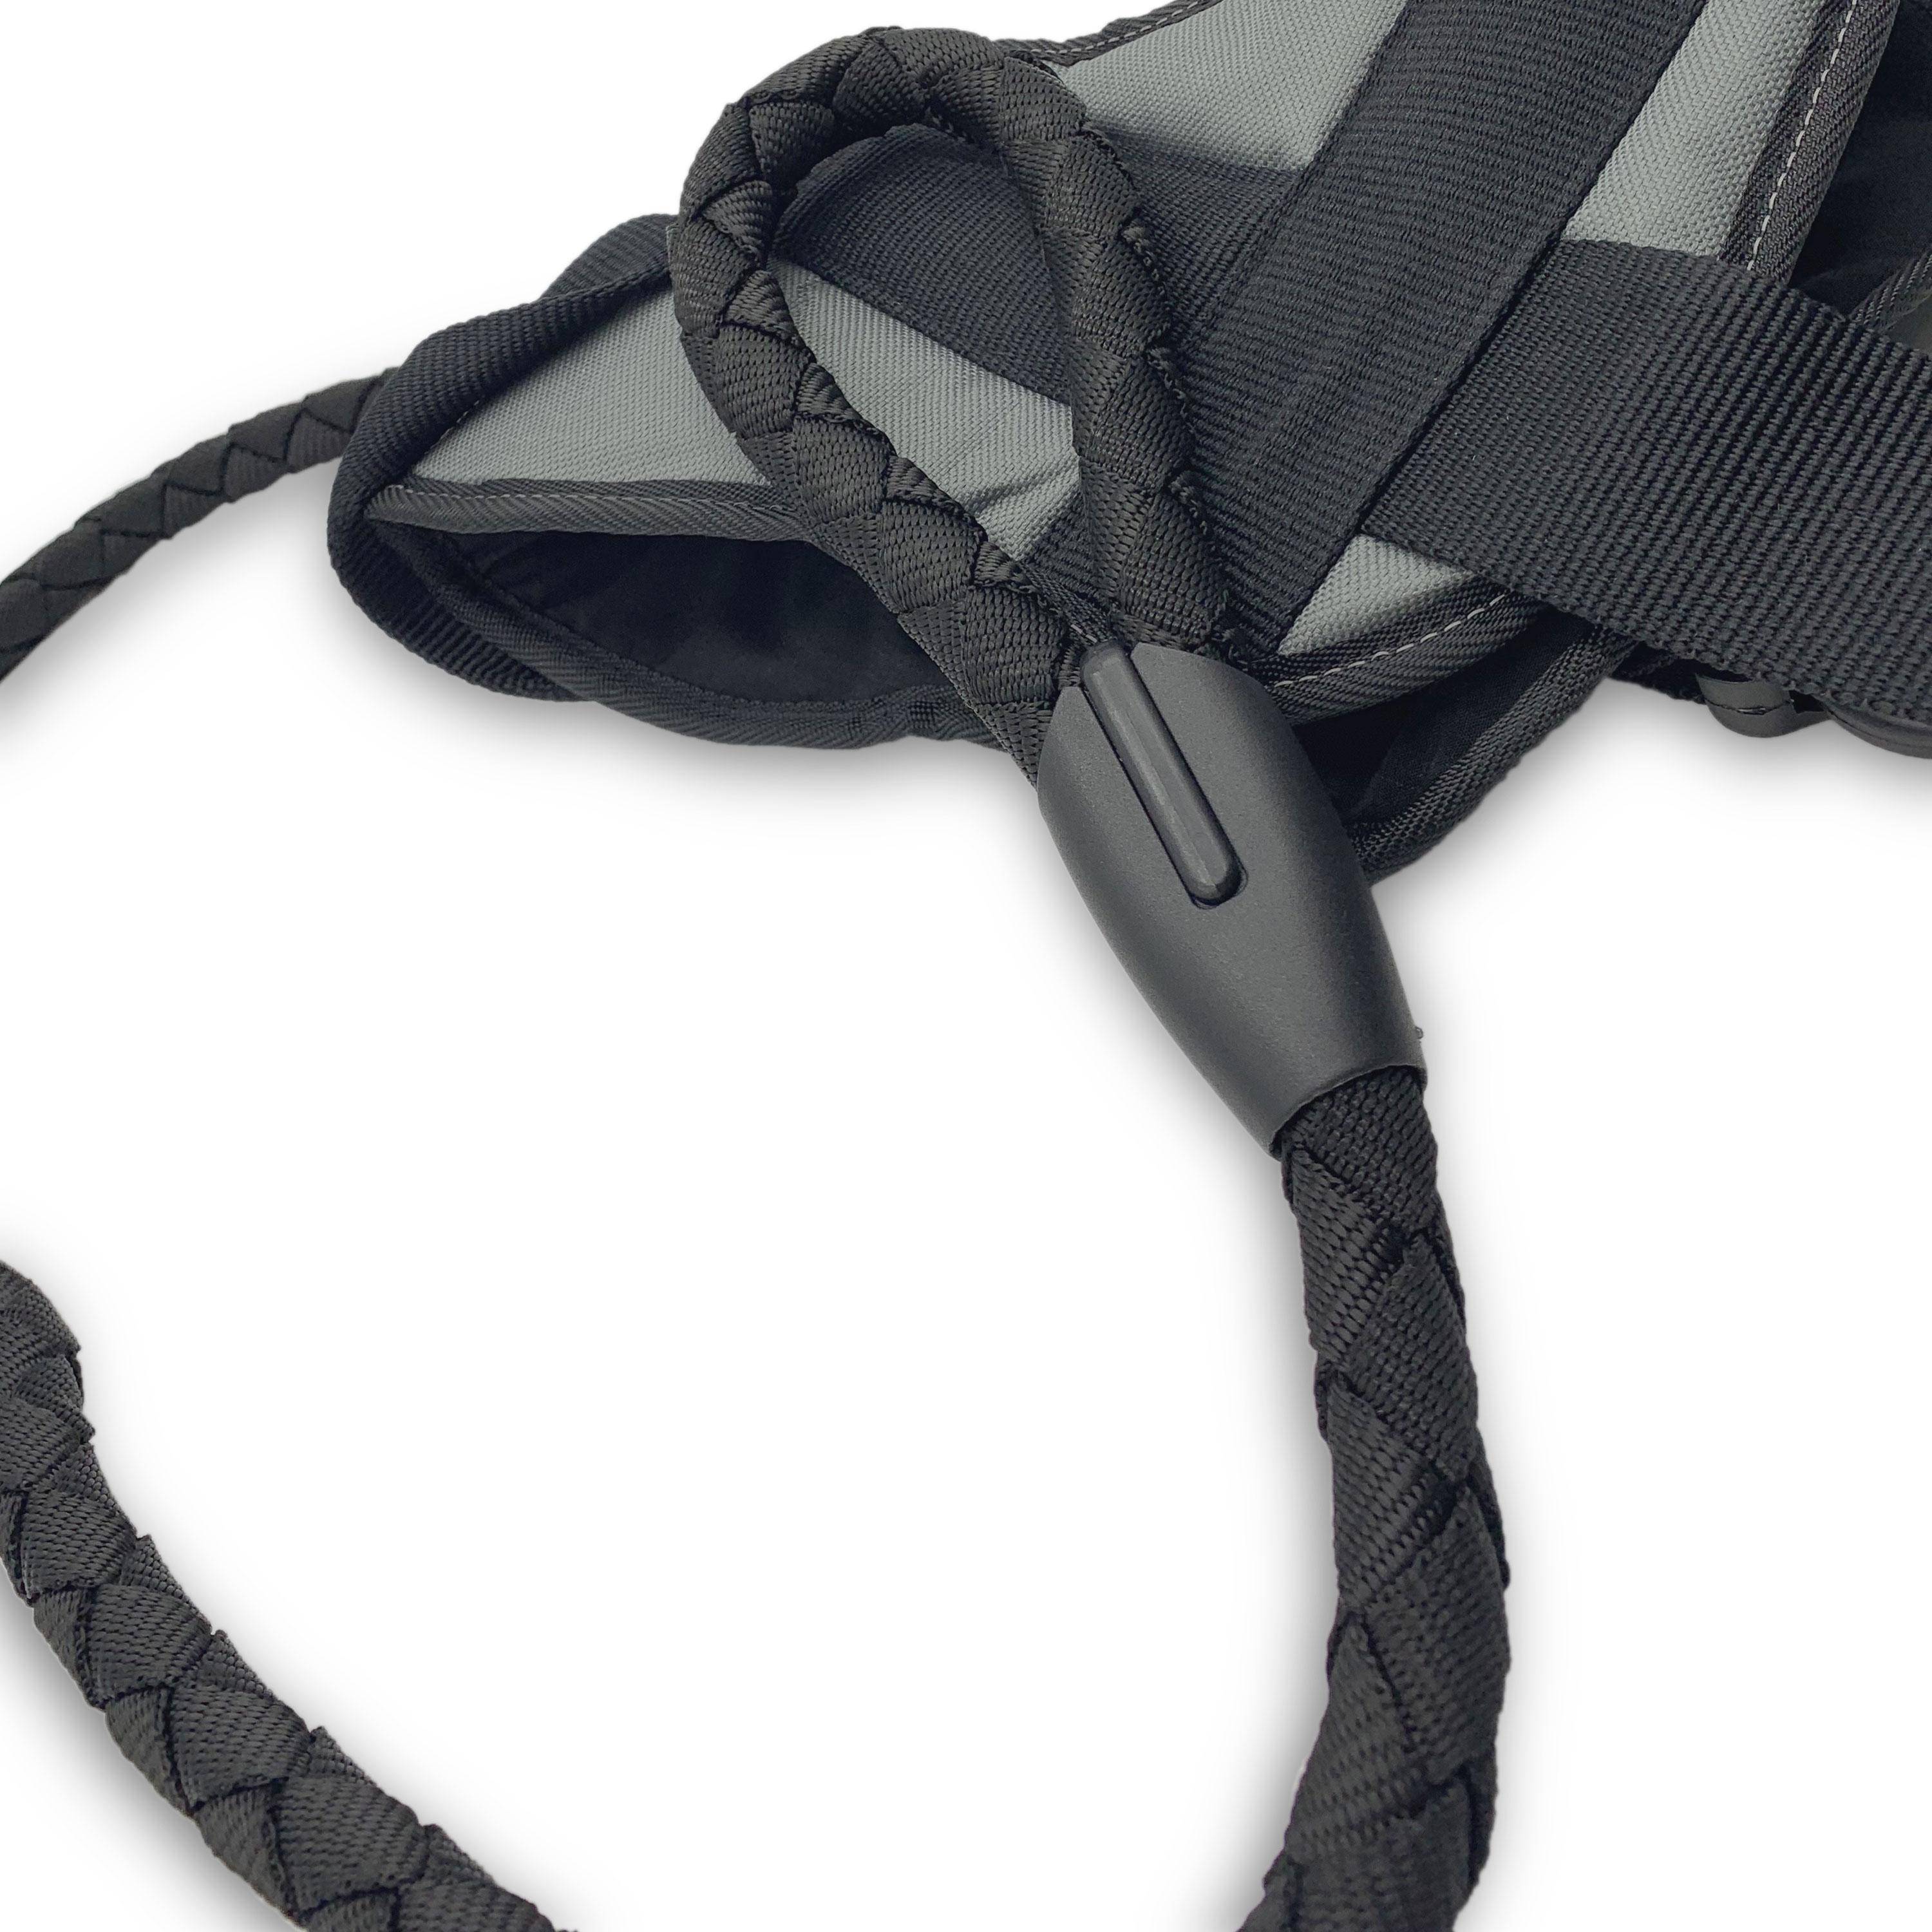 Laisse noire en nylon ronde de 120 cm + Harnais réfléchissant noir et gris réglable pour chien moyen, taille M Photo4